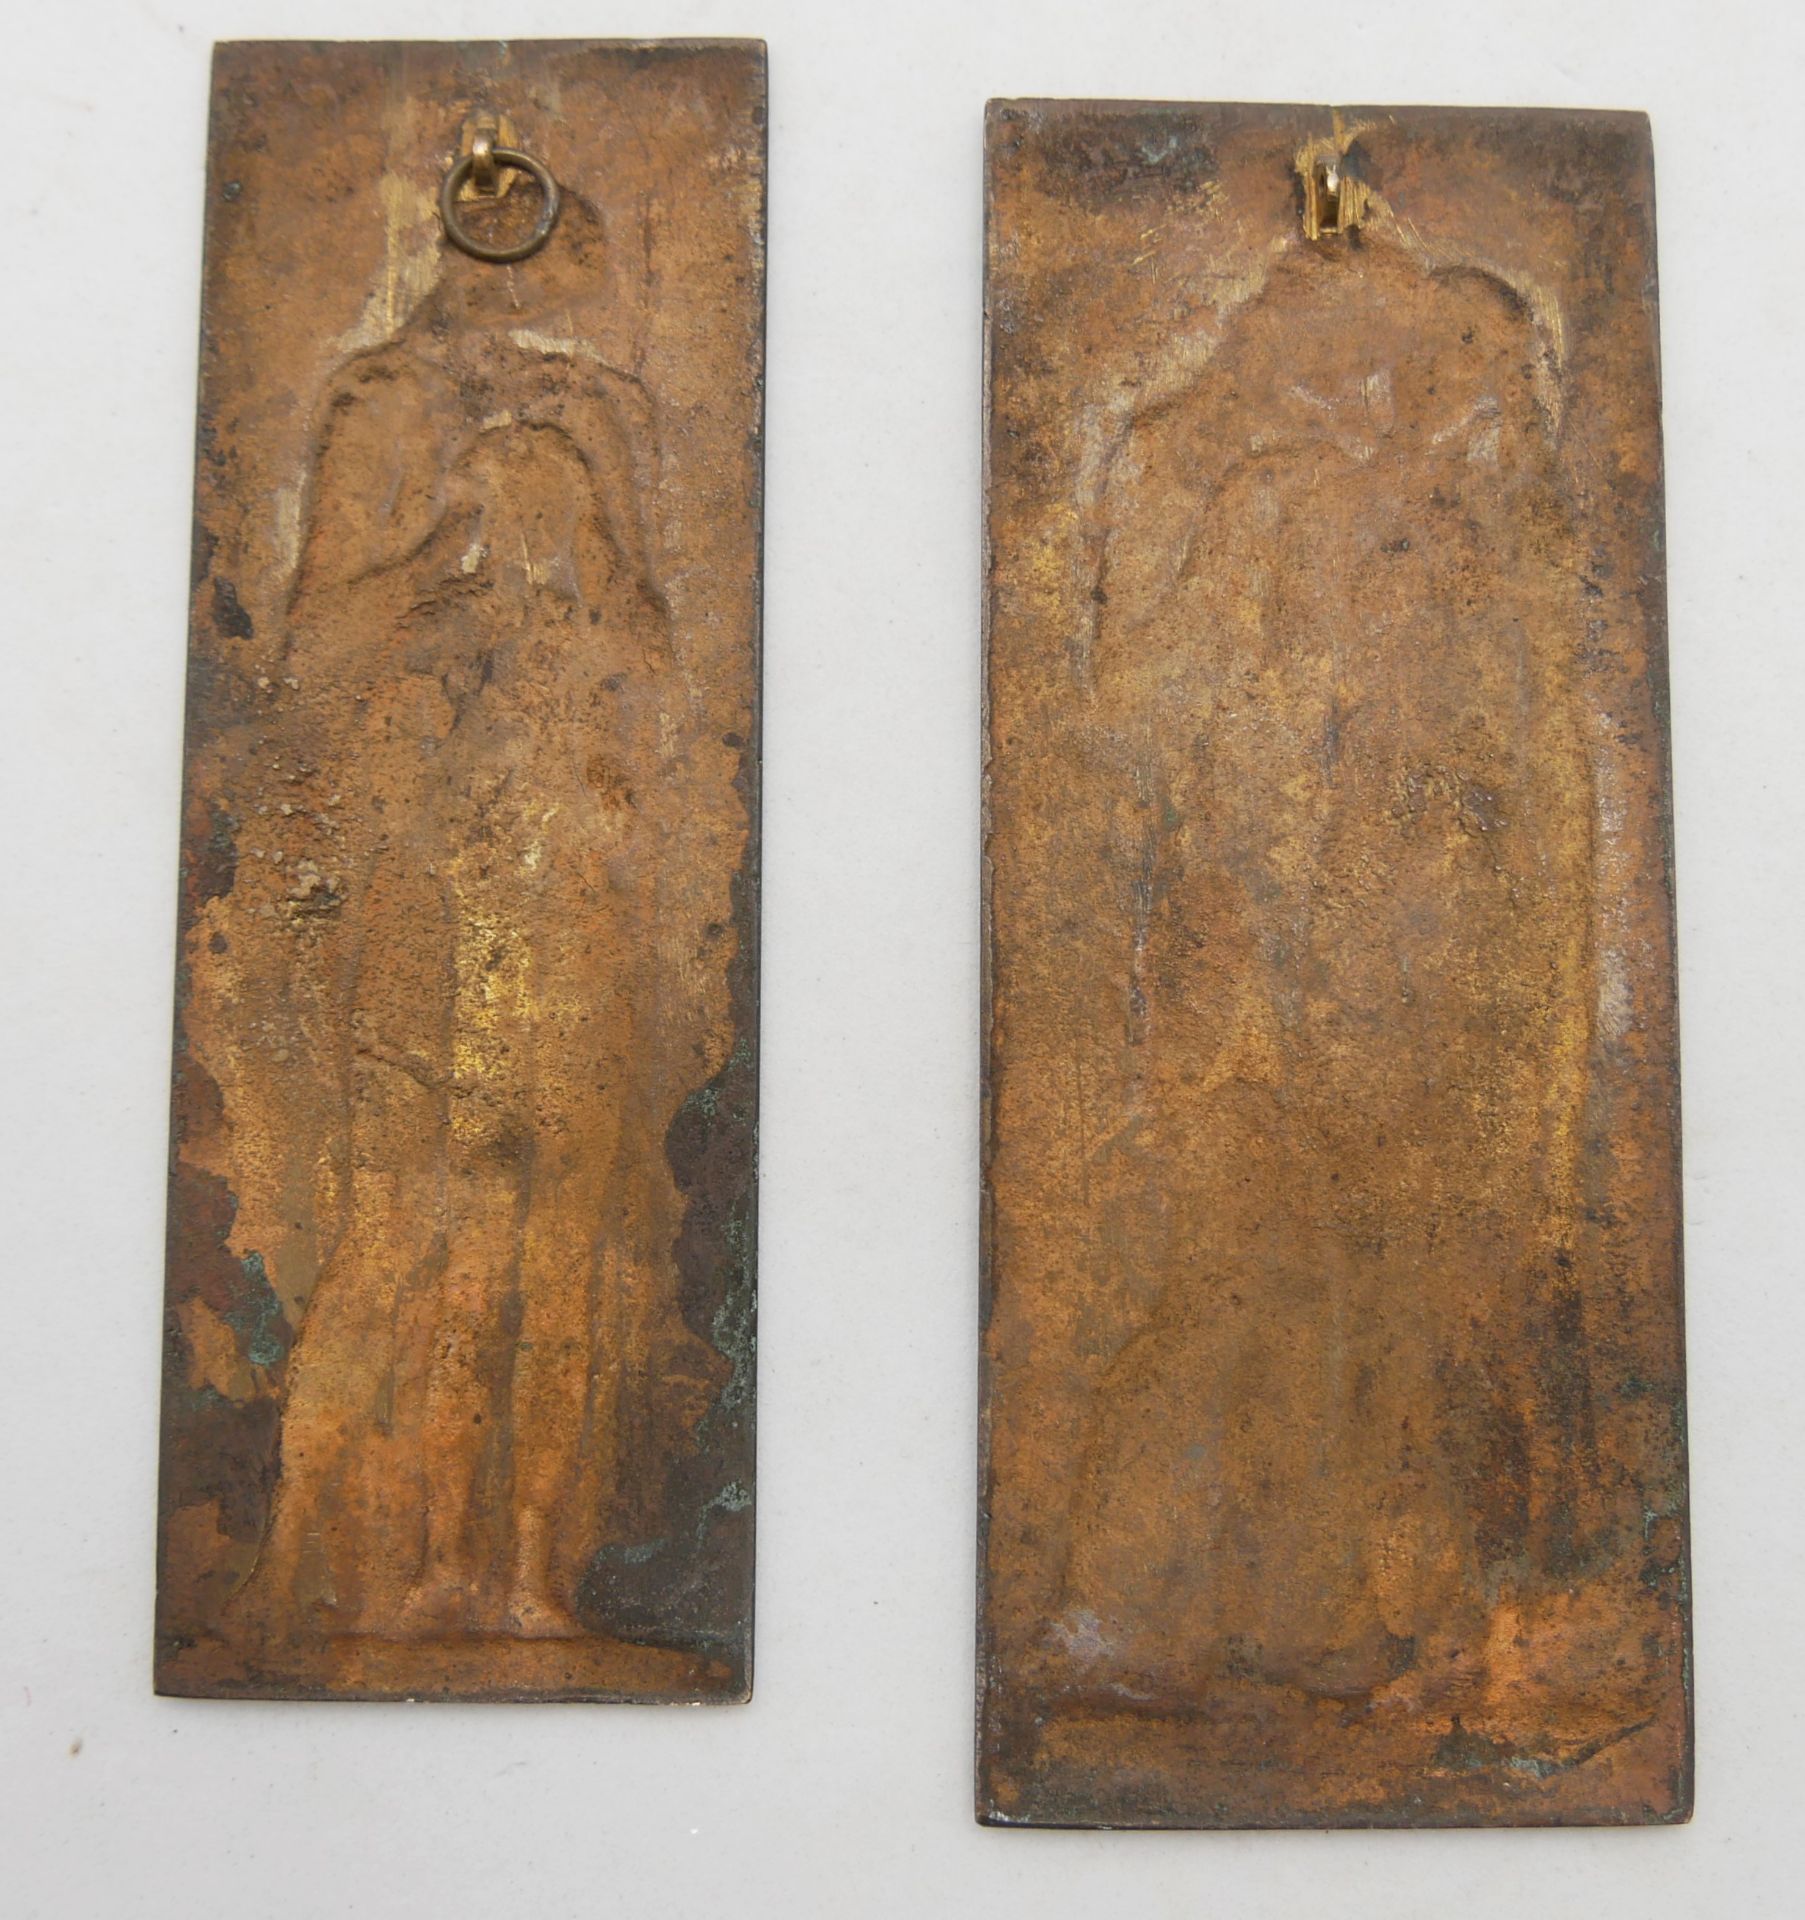 2 Metallreliefs AG 1914. 1x Höhe ca. 12 cm, Breite ca. 5 cm. 1x Höhe ca. 11,5 cm, Breite ca. 4 cm - Bild 2 aus 2